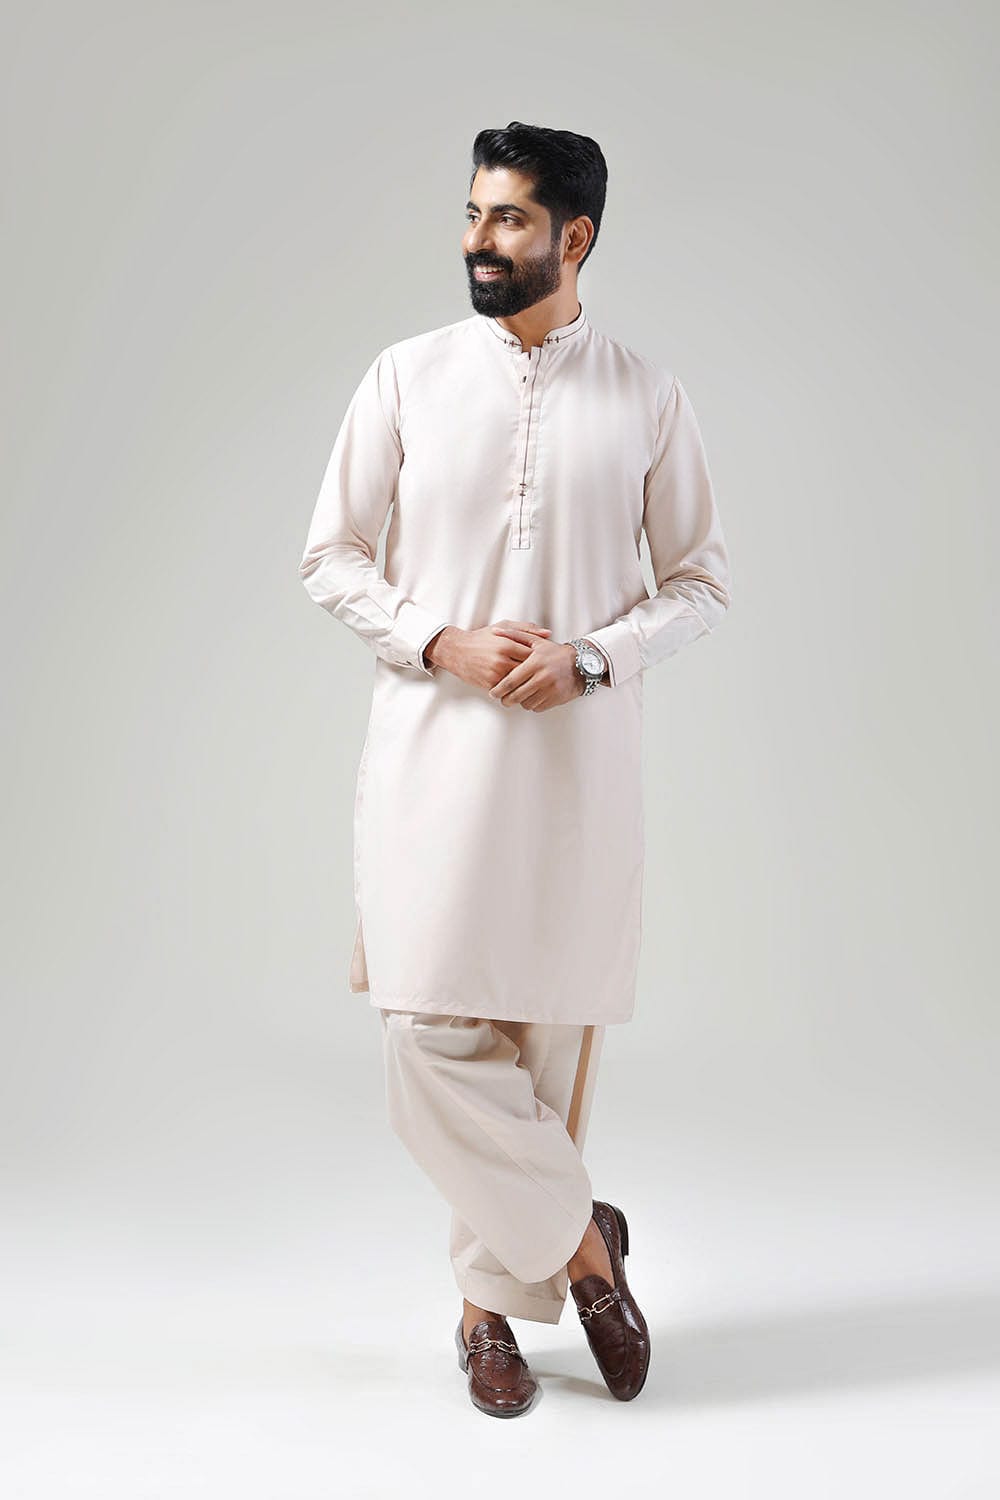 Men Shalwar Kameez White Eid Suit Custom Size Eid Sale Best Cotton Fabric  Comfy